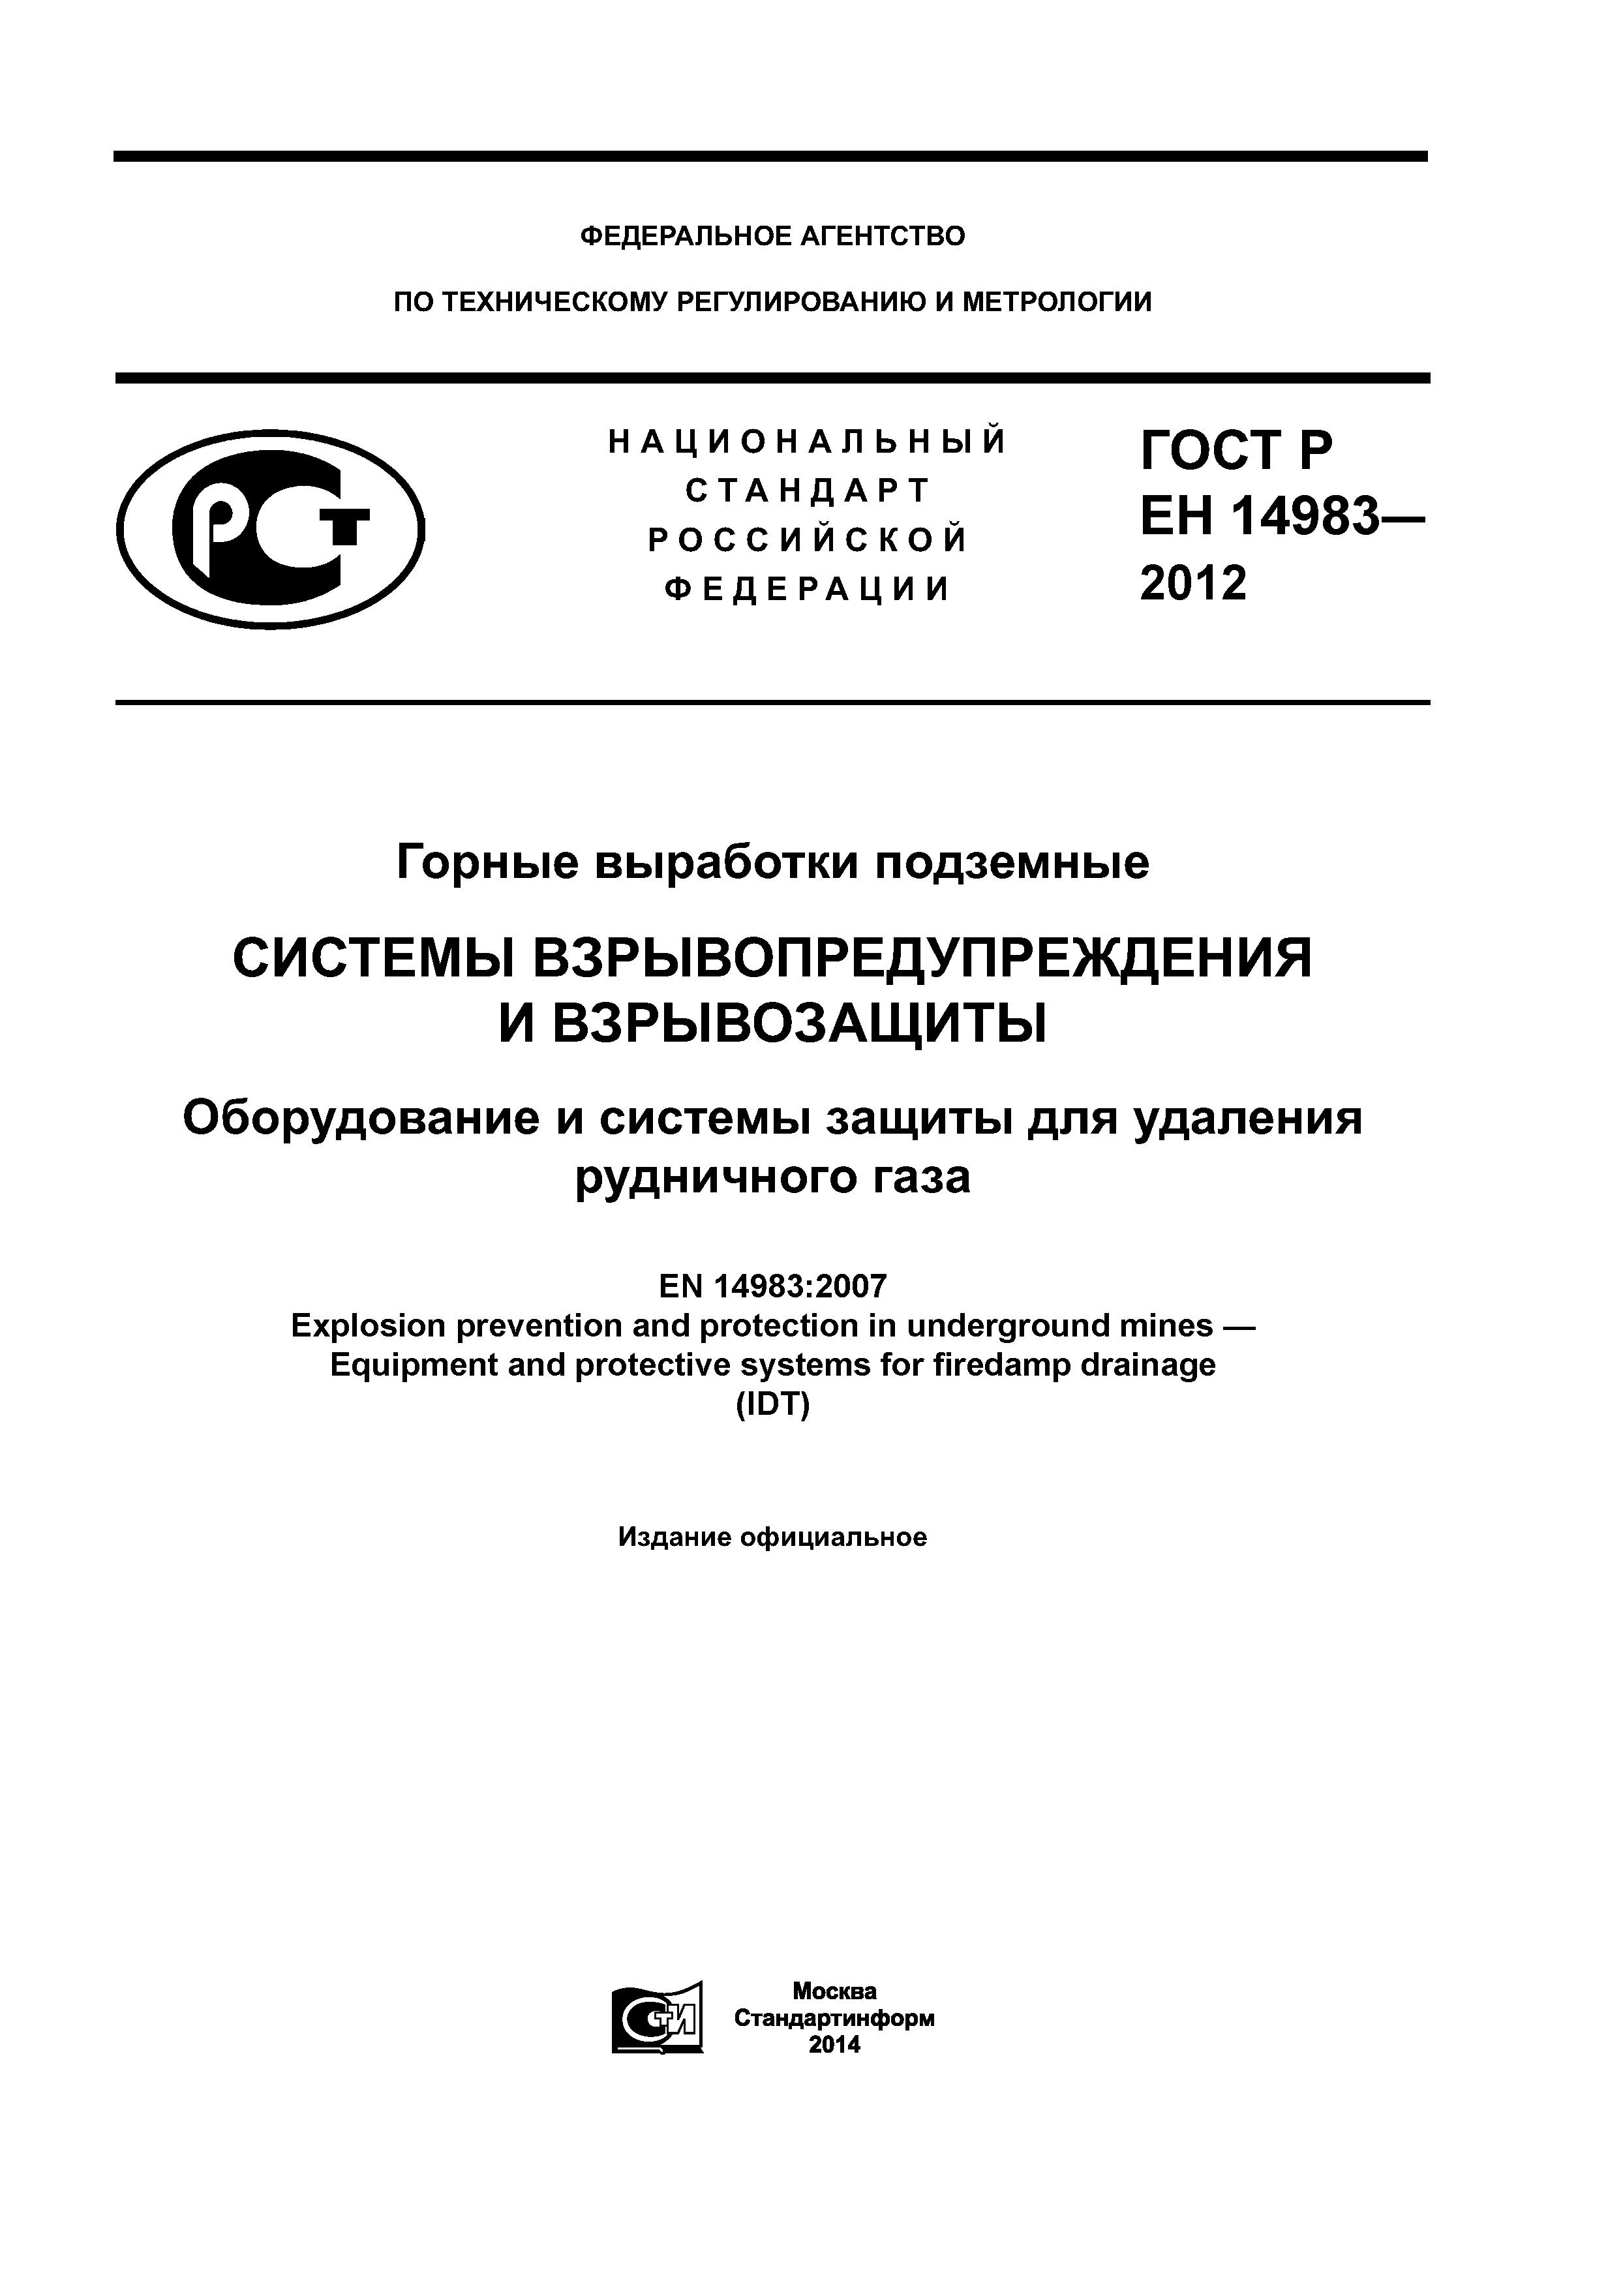 ГОСТ Р ЕН 14983-2012